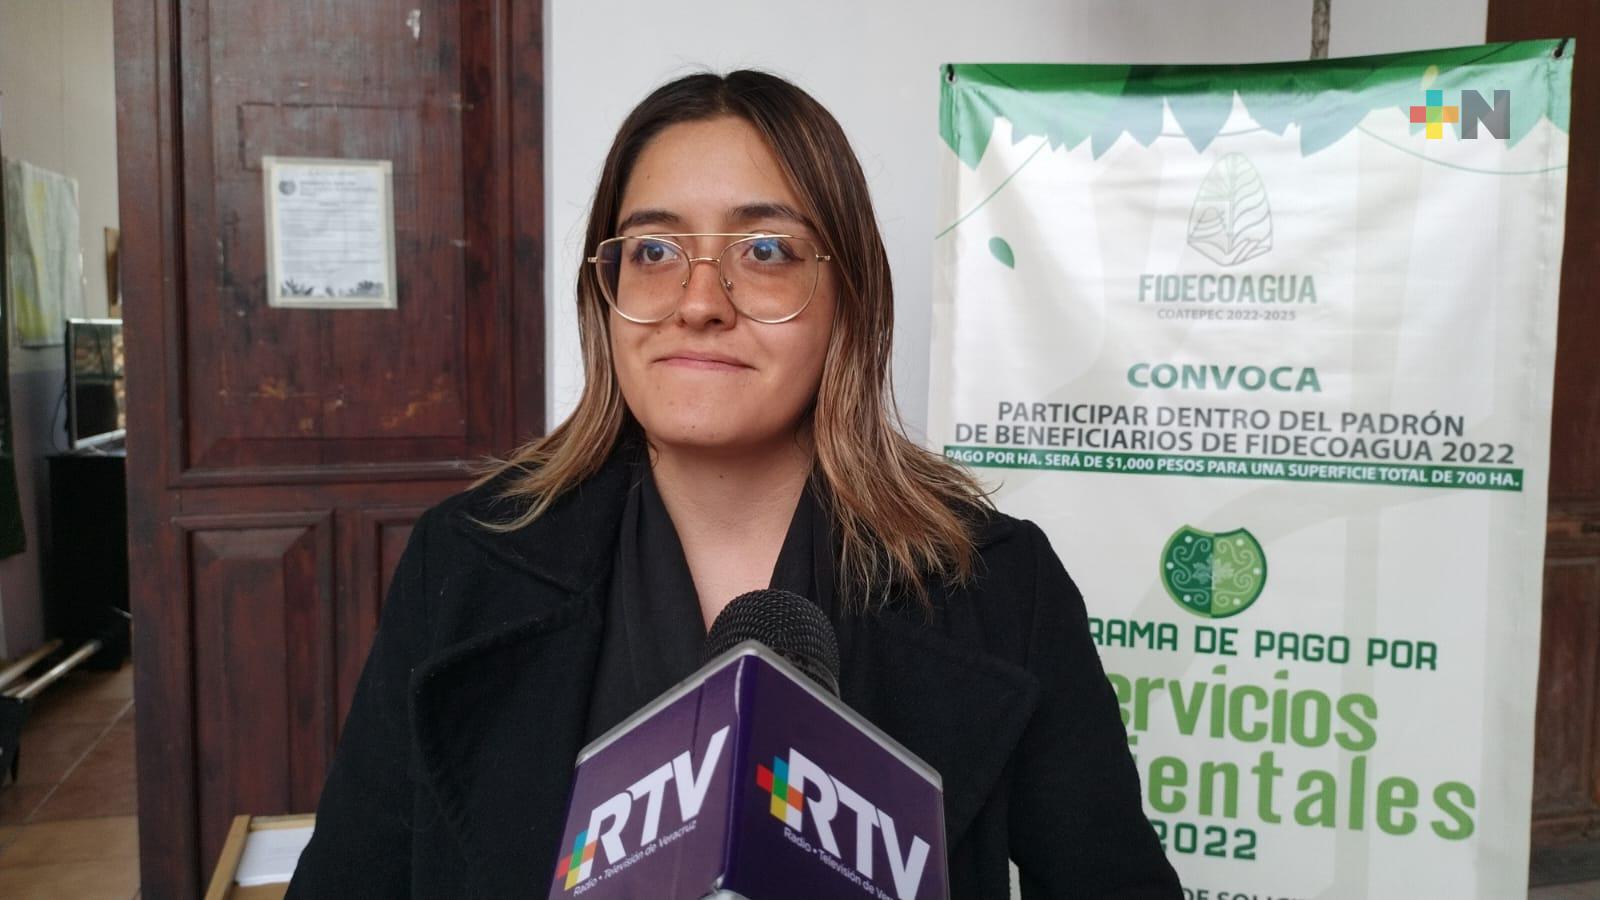 Fidecoagua en Coatepec lanza convocatoria anual para pago de servicios ambientales